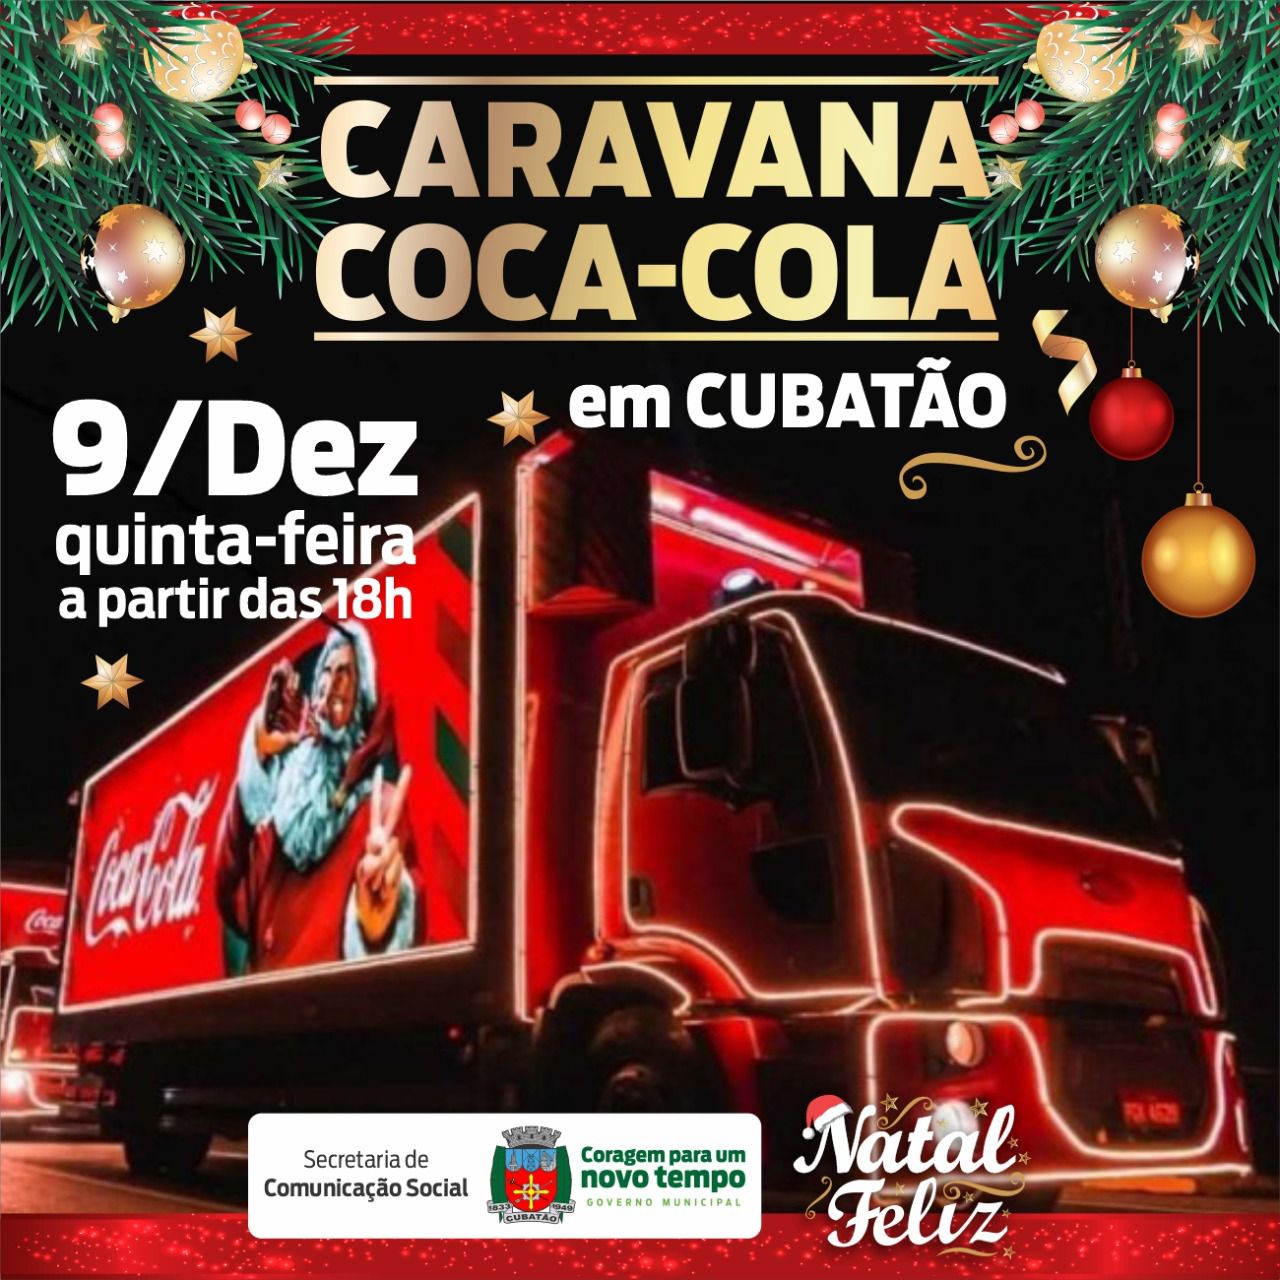 Caravana de Natal da Coca-Cola estará nesta quinta-feira (9) em Cubatão –  Prefeitura de Cubatão